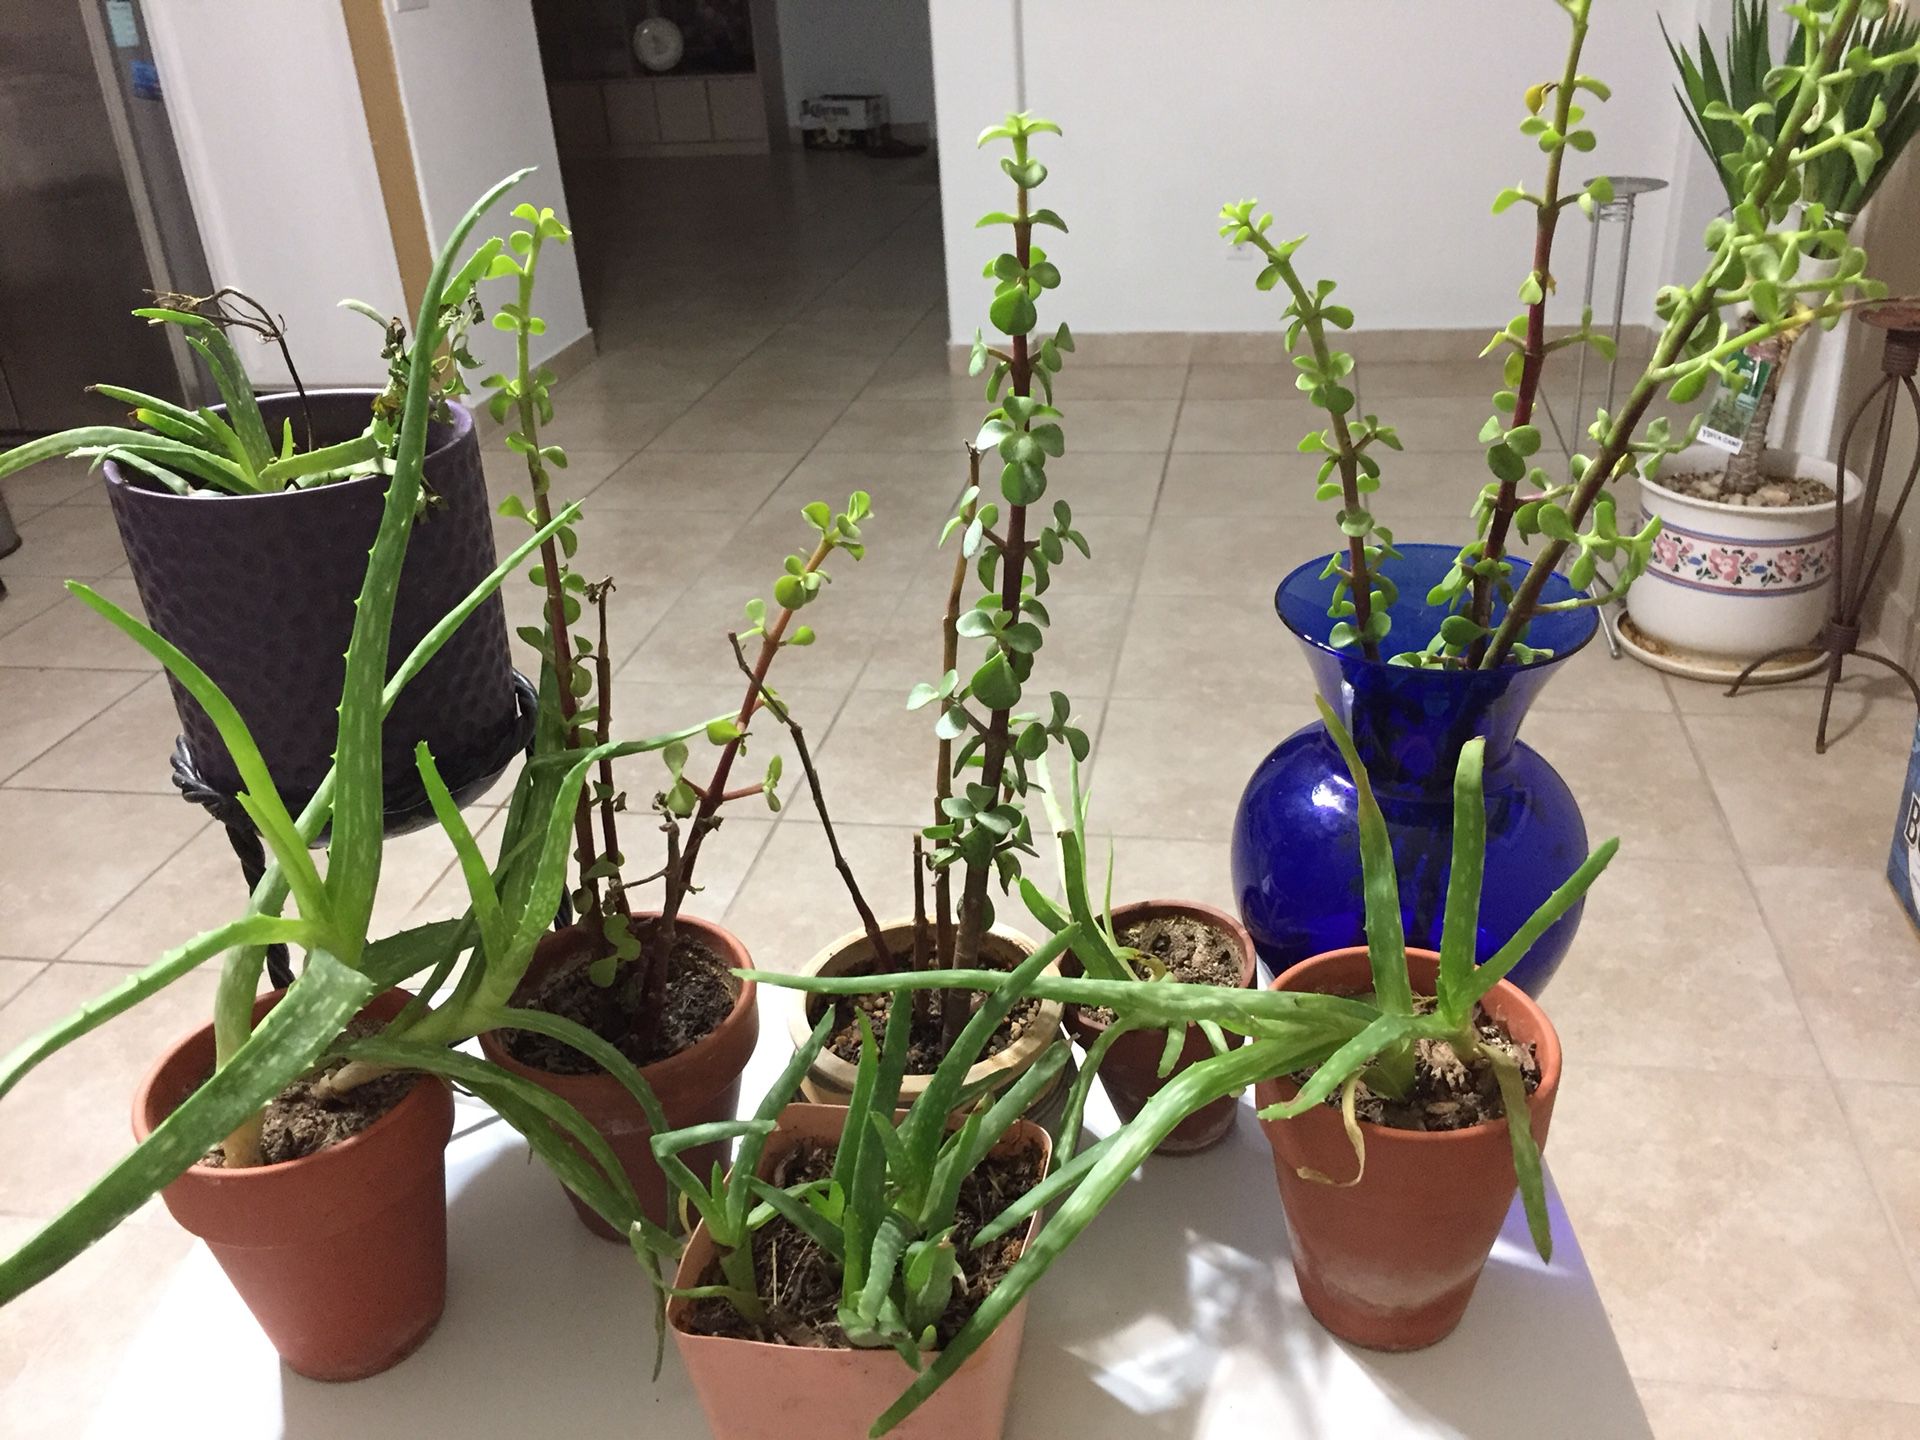 Aloe, jade small house plants(8 PCs).